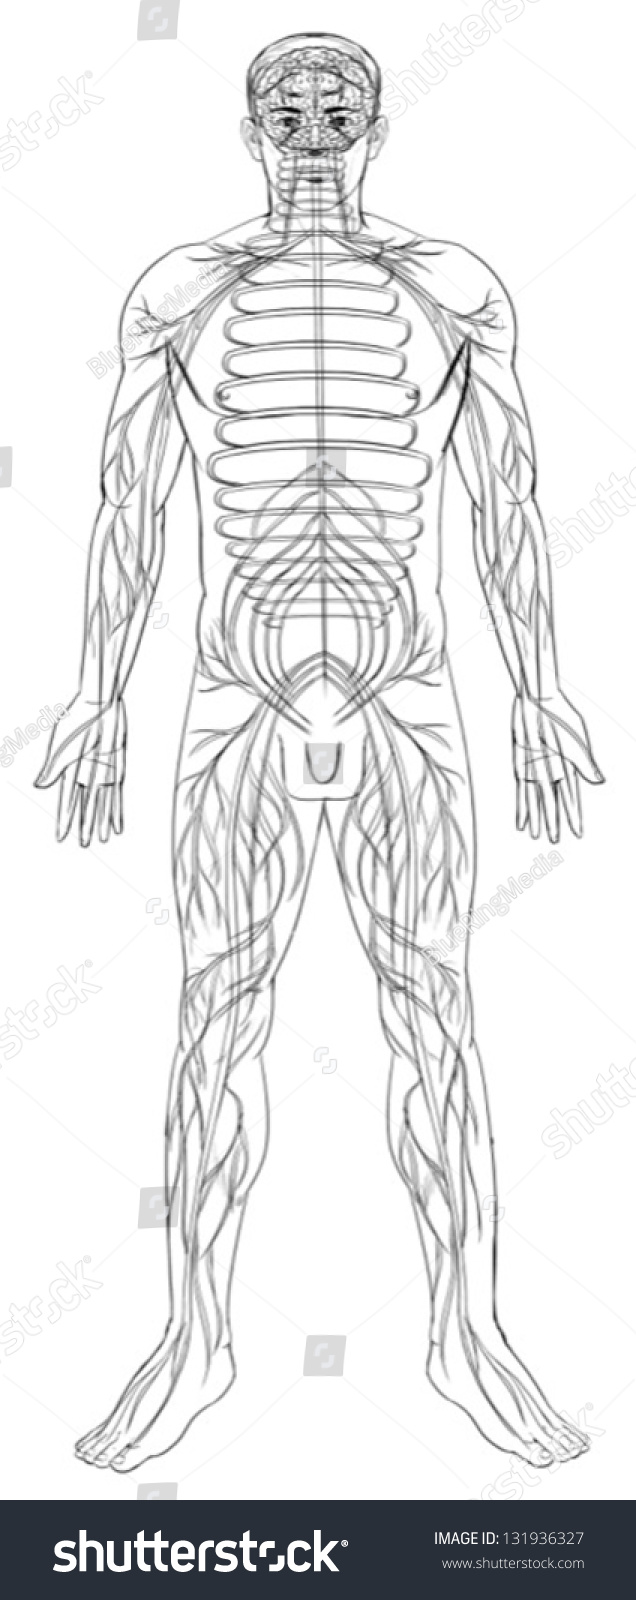 Outline Illustration Of The Human Nervous System - 131936327 : Shutterstock